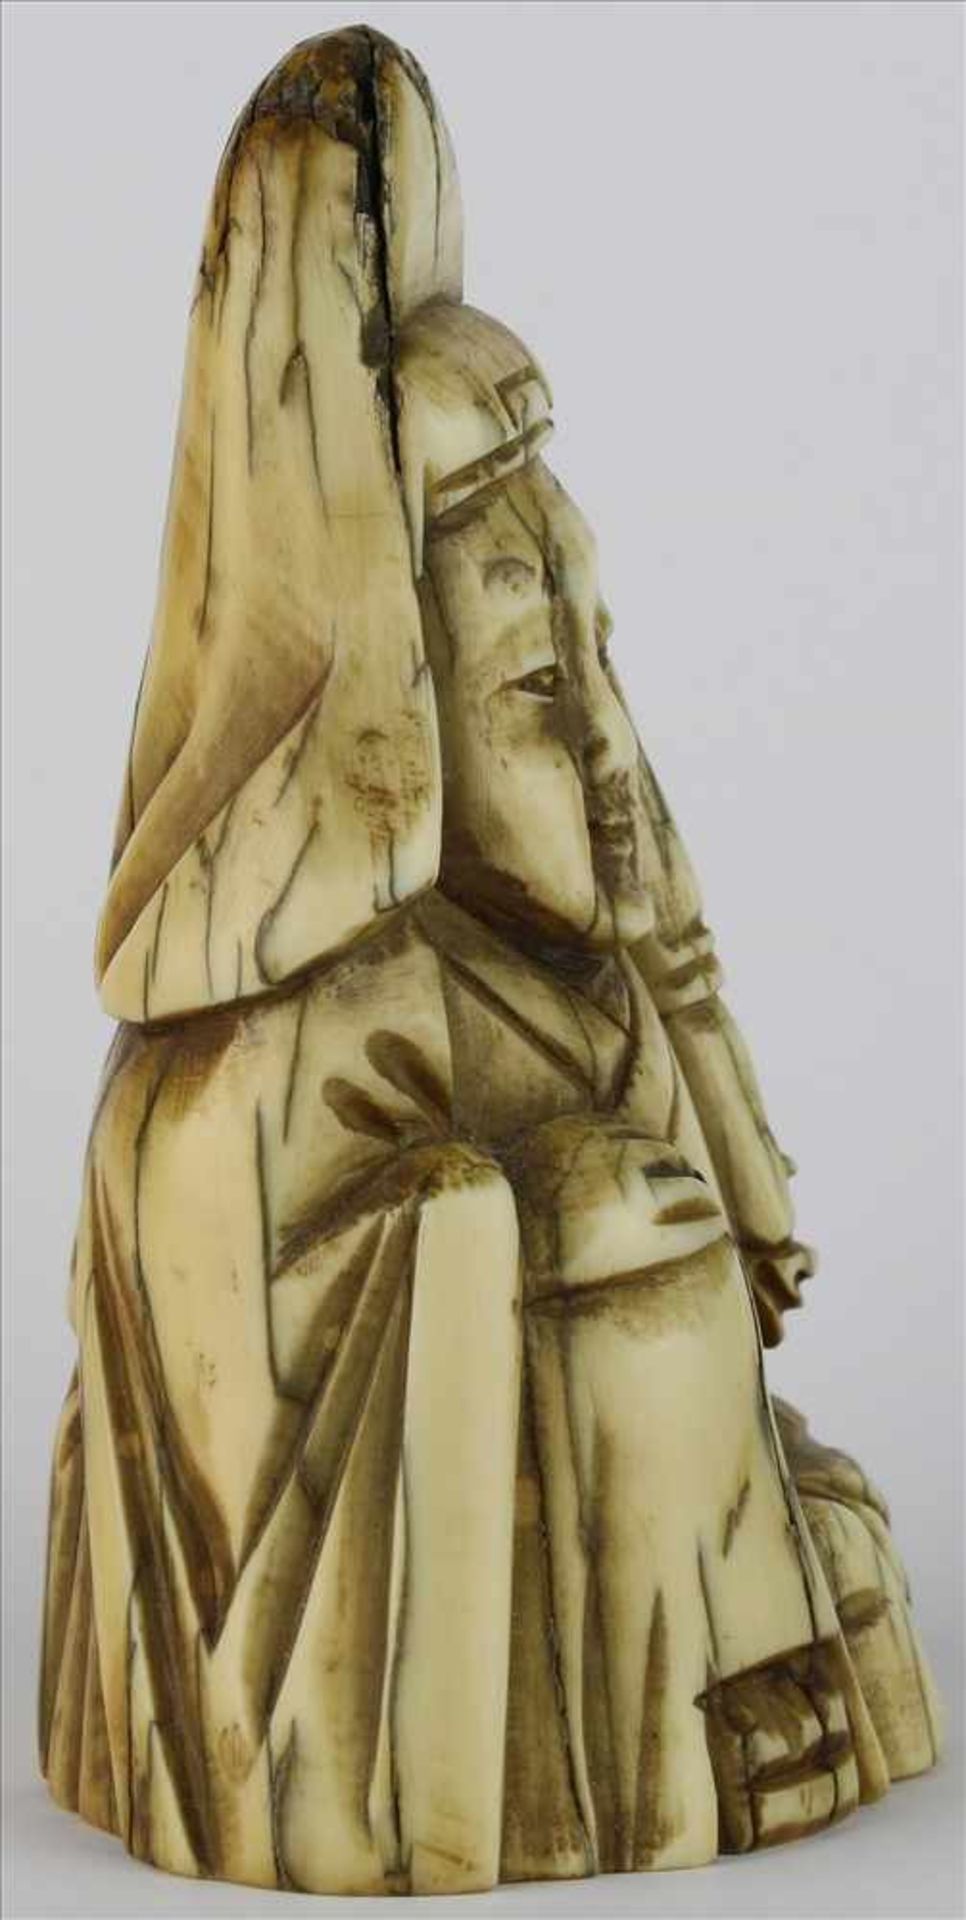 NetsukeJapan, späte Meiji-Zeit. Sitzender Weiser. Elfenbein geschnitzt. Höhe ca. 8 cm. - Bild 2 aus 6